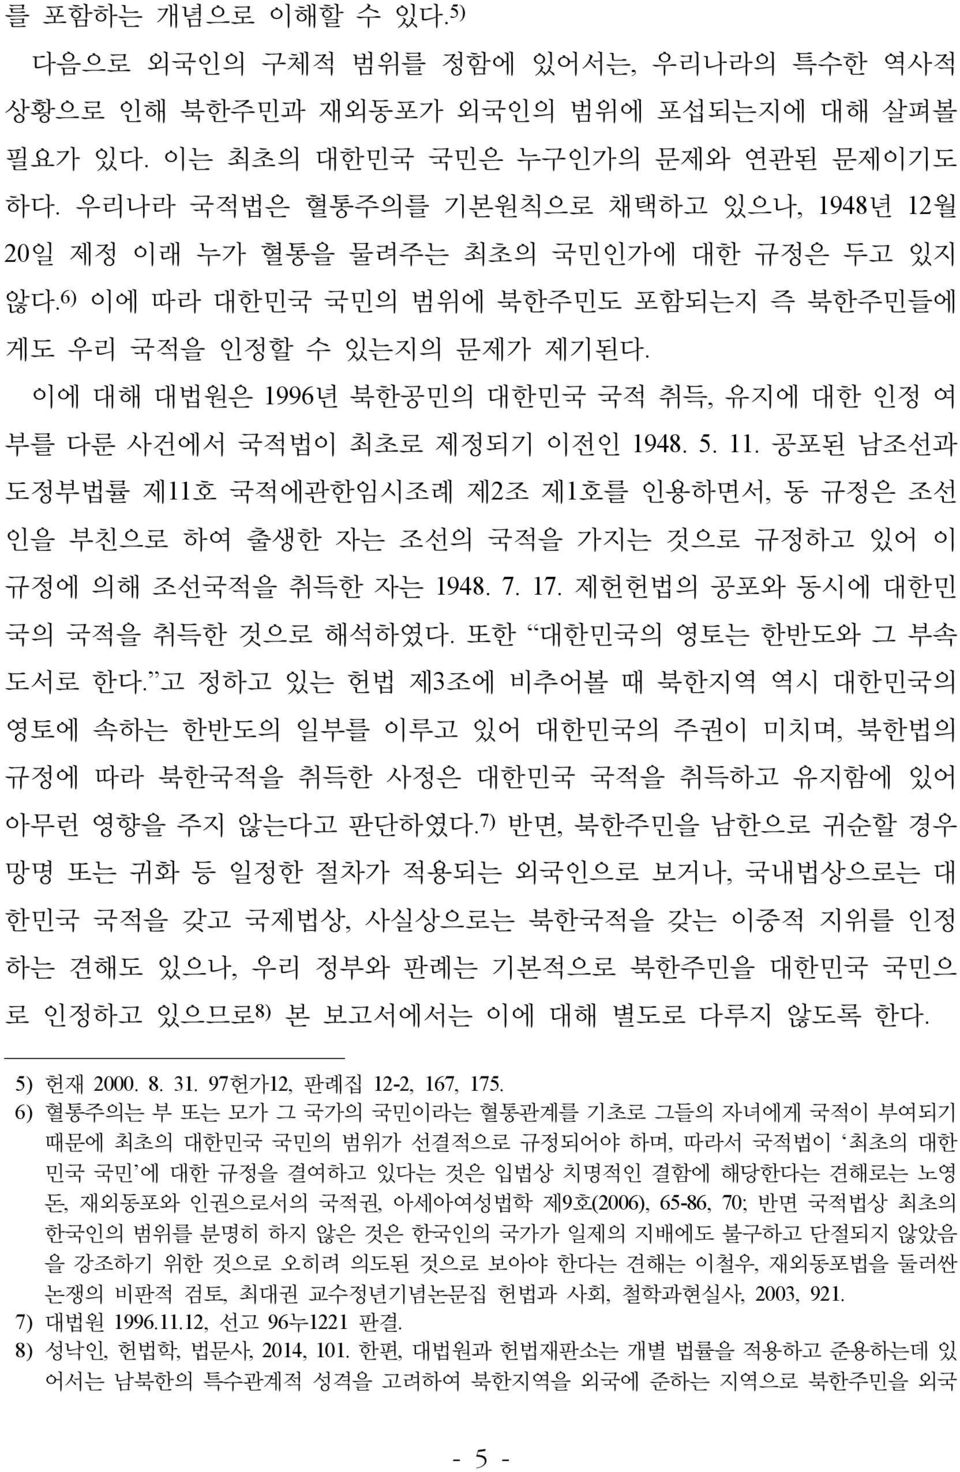 이에 대해 대법원은 1996년 북한공민의 대한민국 국적 취득, 유지에 대한 인정 여 부를 다룬 사건에서 국적법이 최초로 제정되기 이전인 1948. 5. 11.